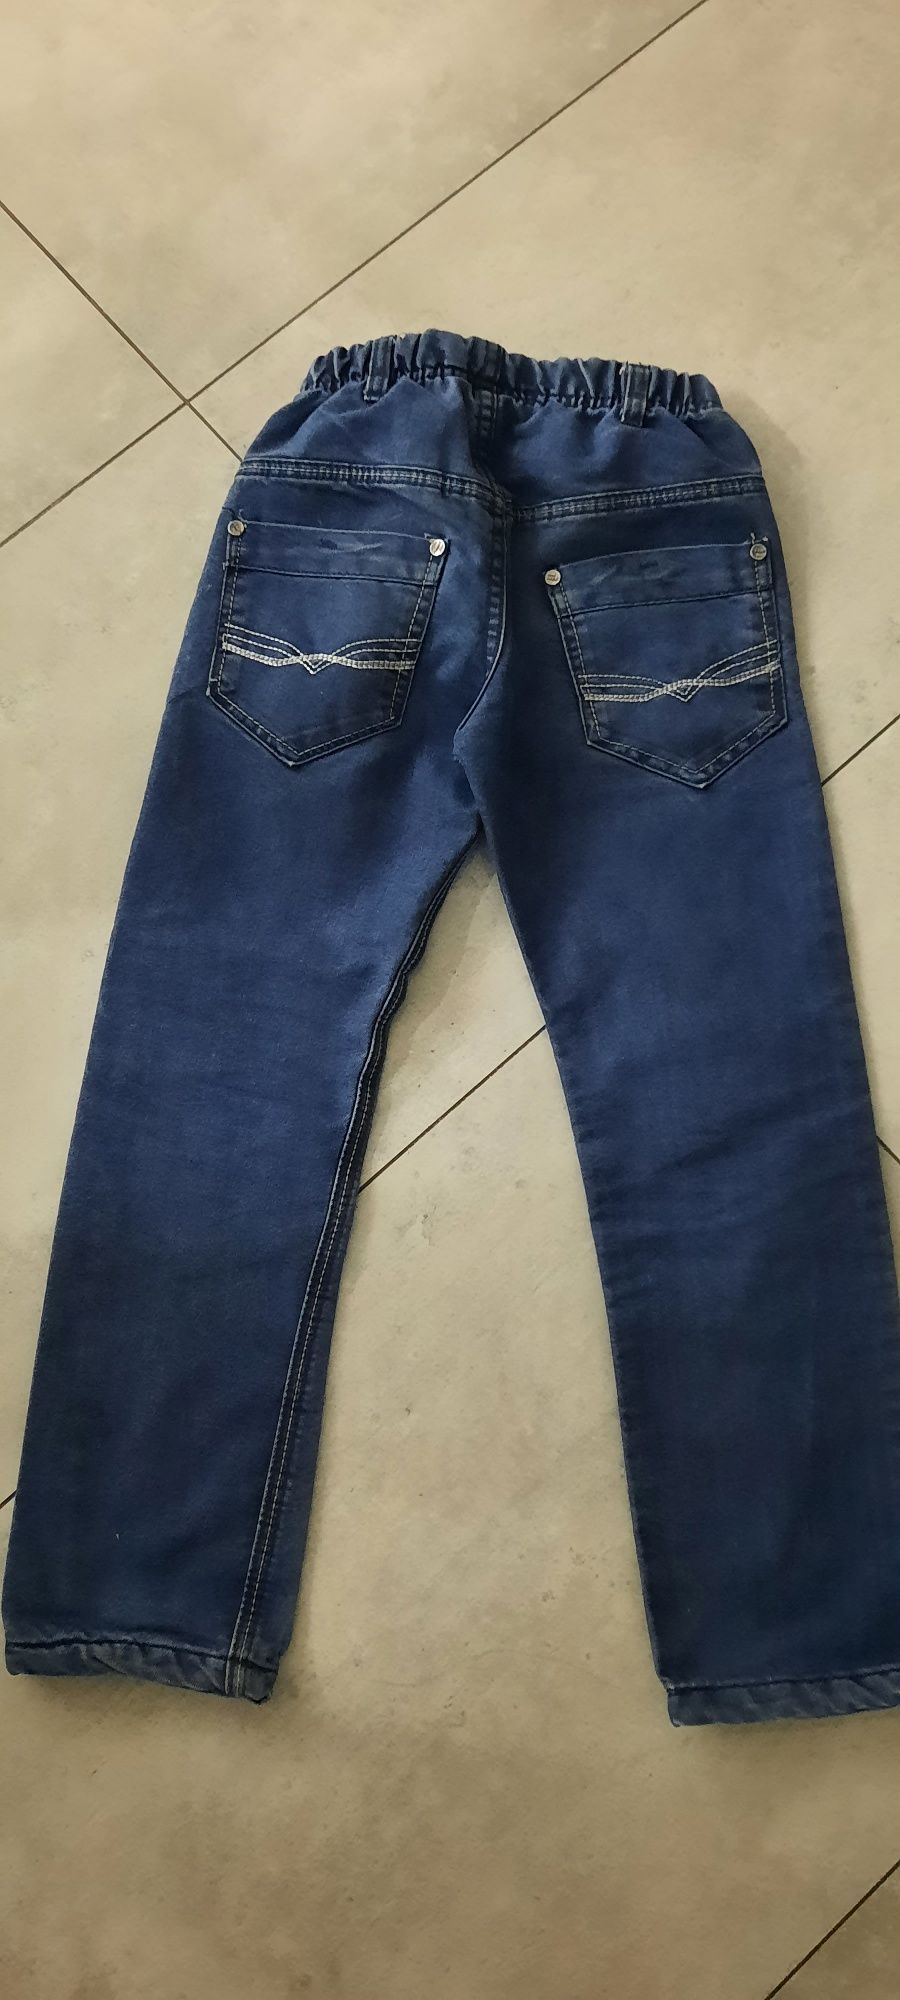 Spodnie jeansowe chłopięce 134/140